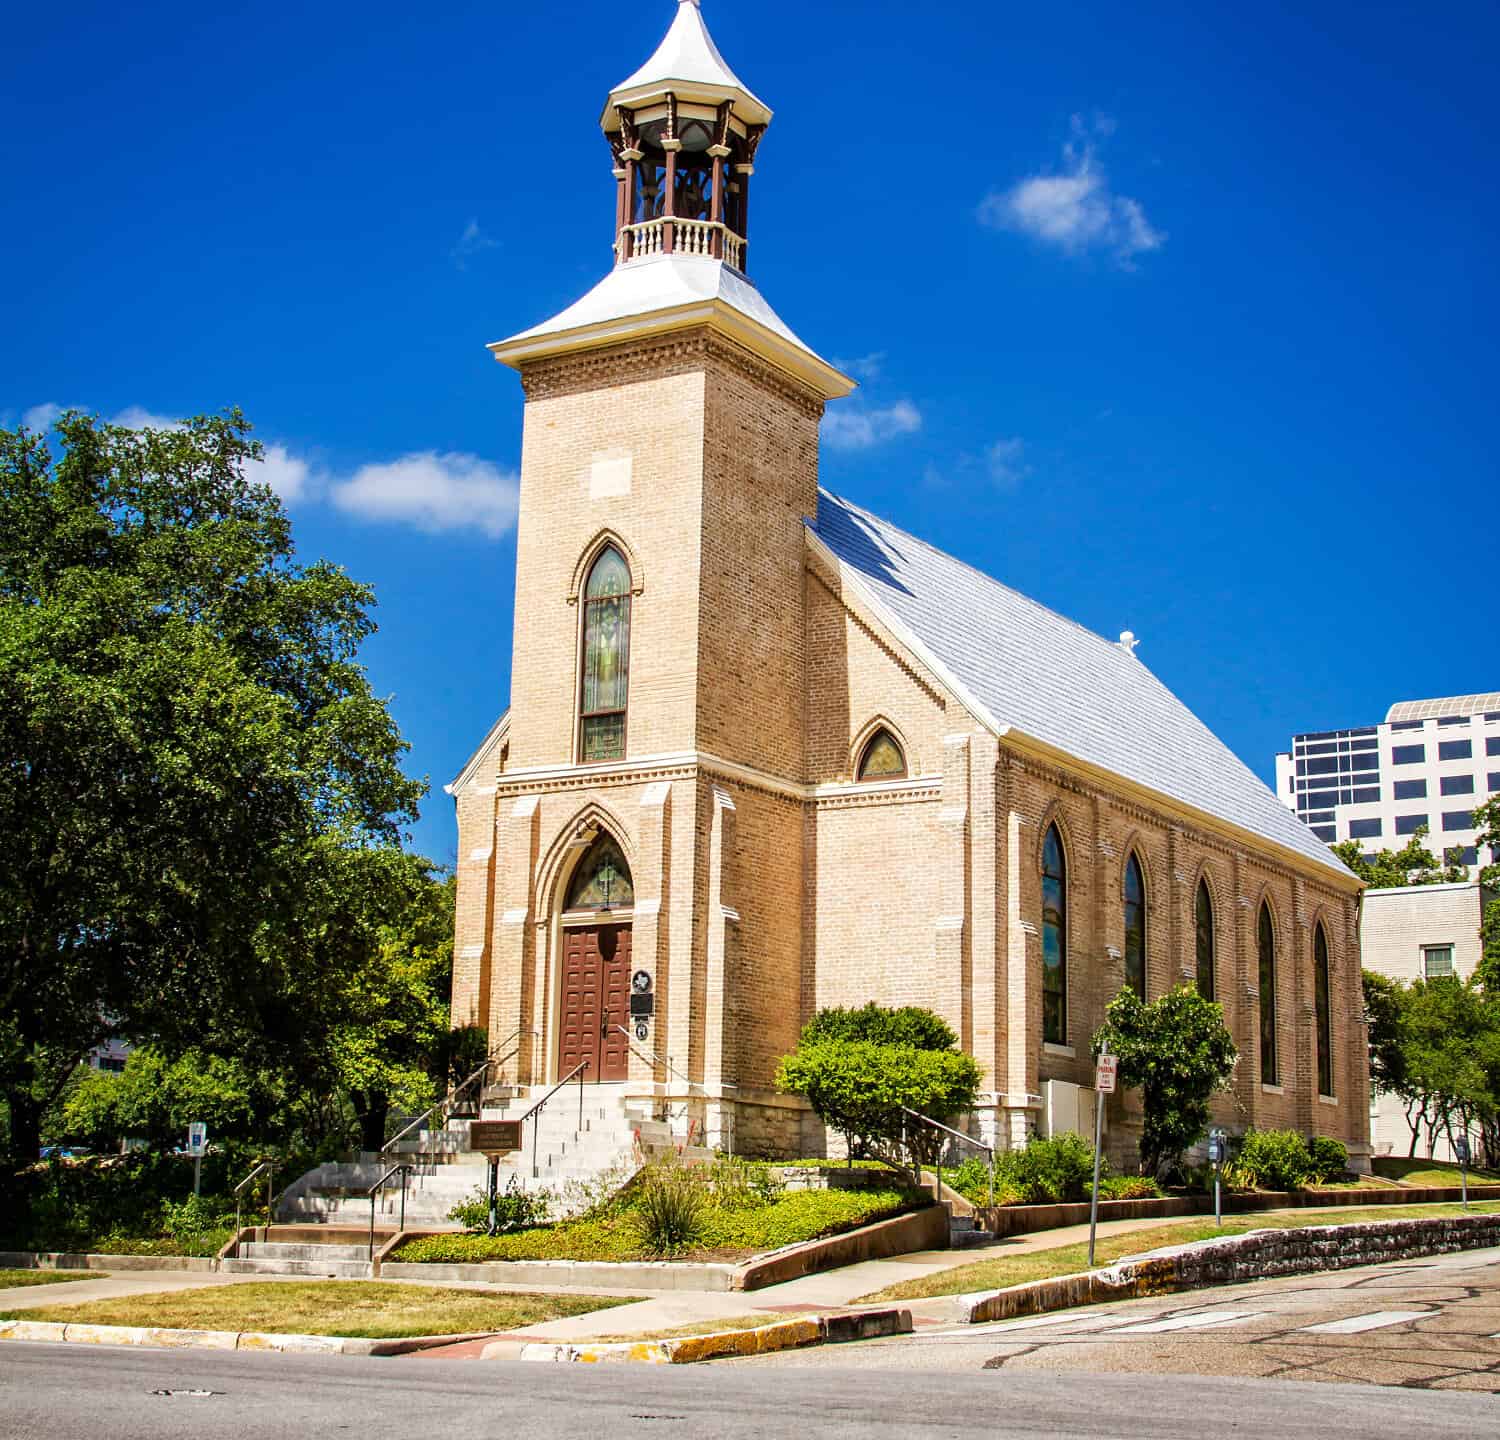 Gethsemane Lutheran Church, a historic Lutheran church in downtown Austin, Texas.